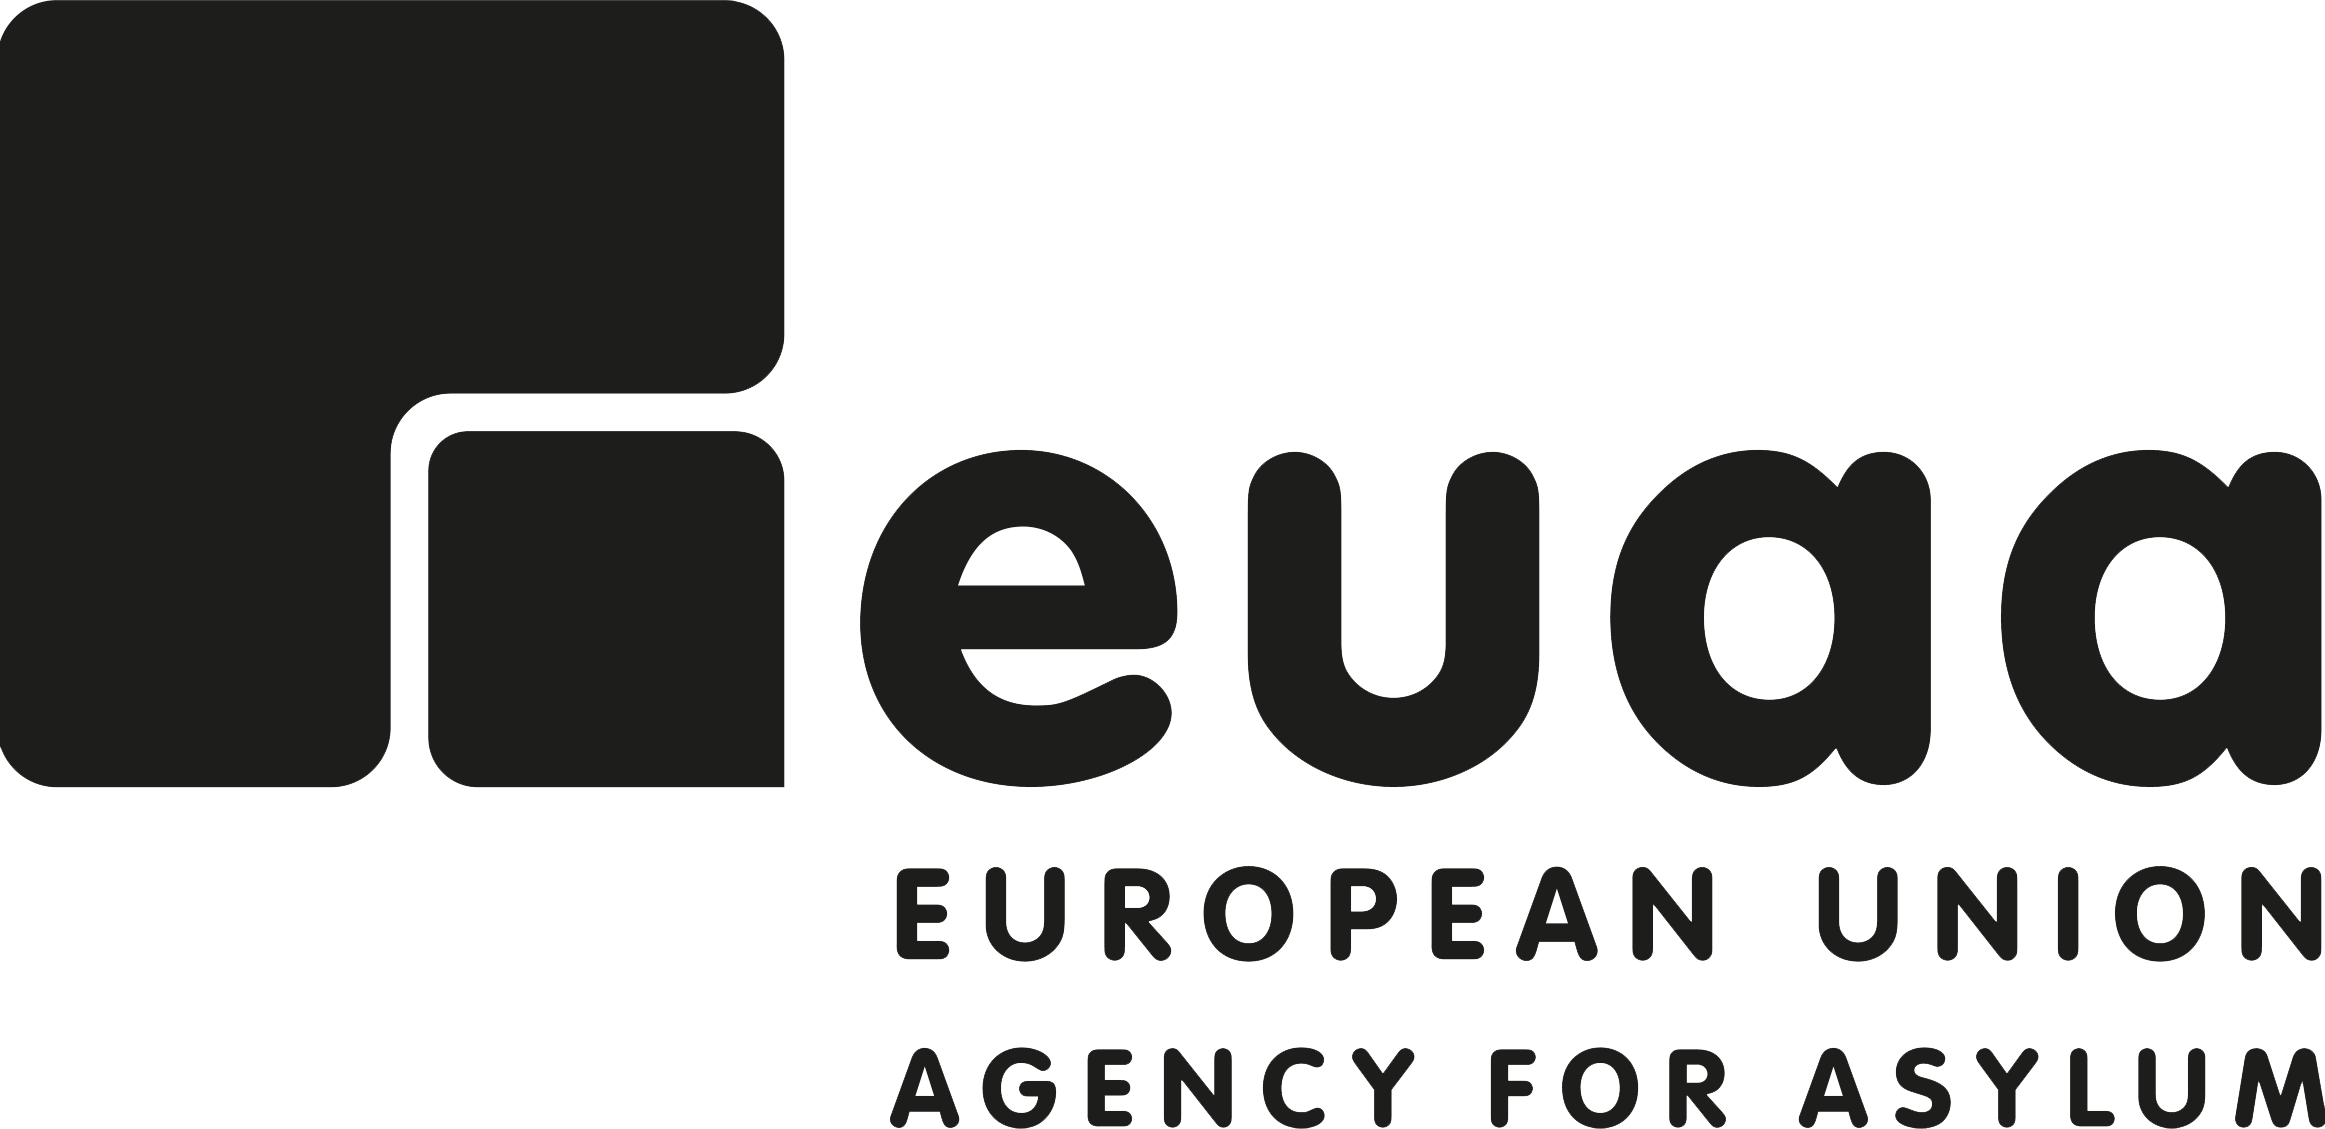 Eiropas Savienības Patvēruma aģentūra – melnbalta emblēma